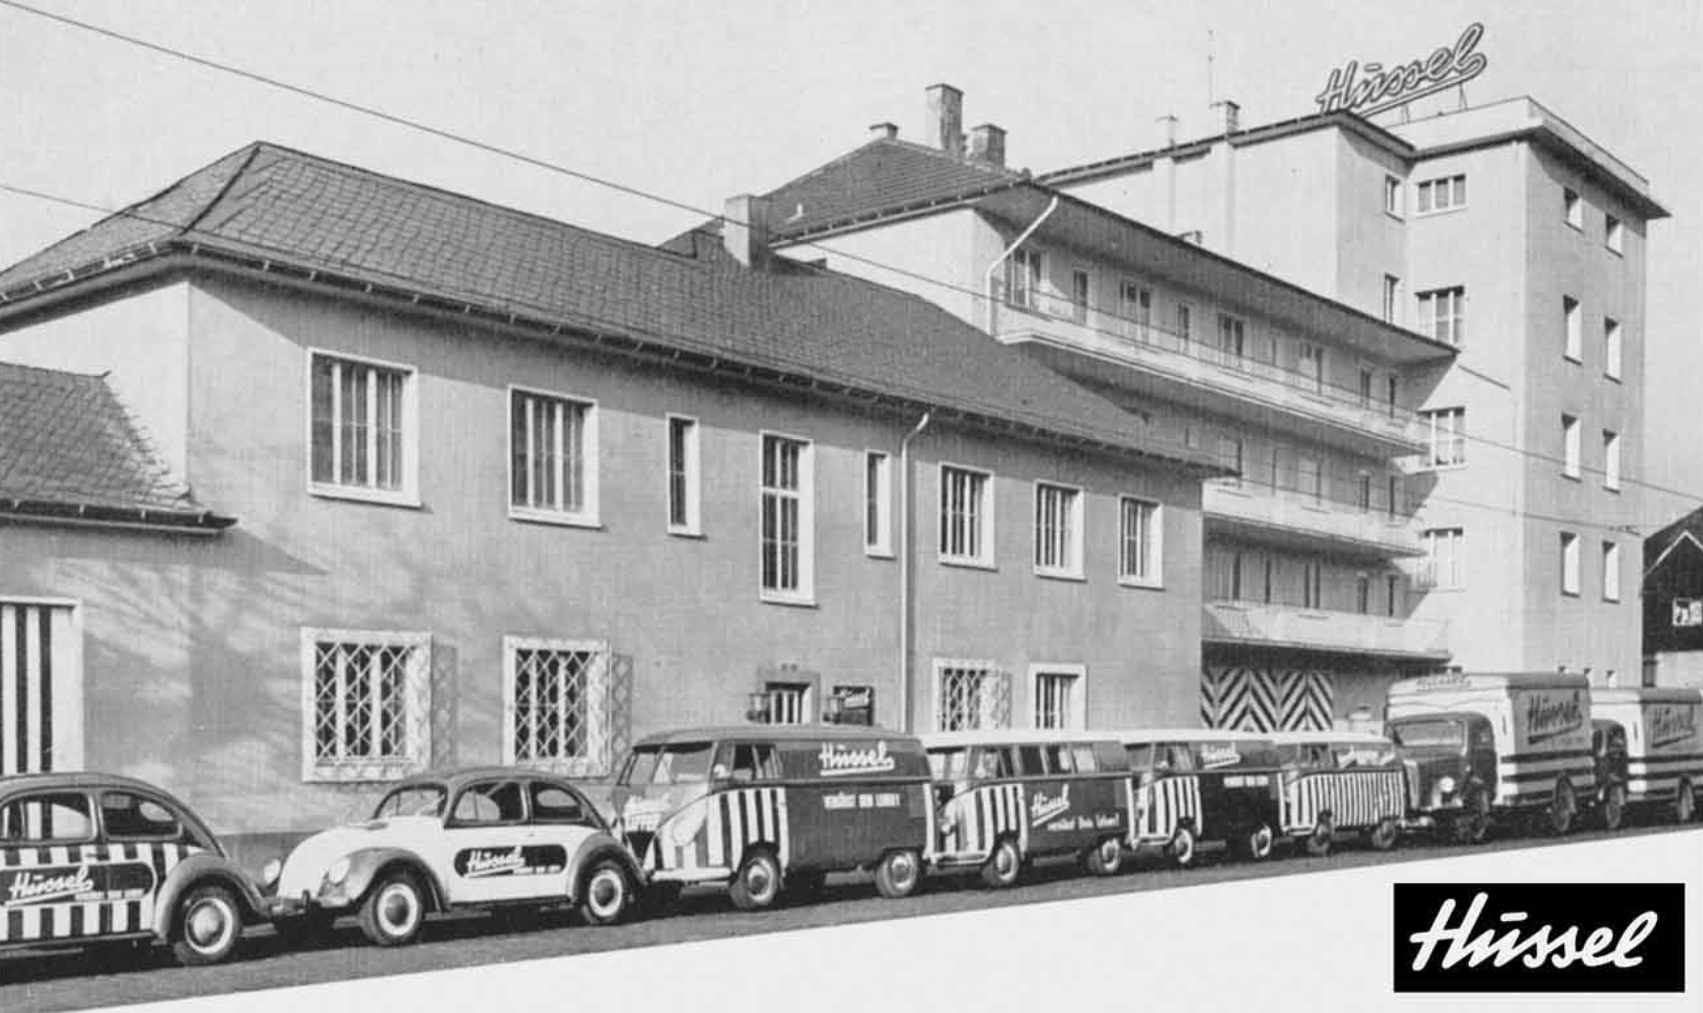 Schwarz-weiß-Fotografie der Hussel Firmenzentrale aus dem Jahr 1957 von der gegenüberliegenden Straßenseite aus fotografiert. Vor dem Gebäude stehen VW-Käfer und VW-Bullis, mit dem Firmenlogo versehen, in einer Reihe geparkt.